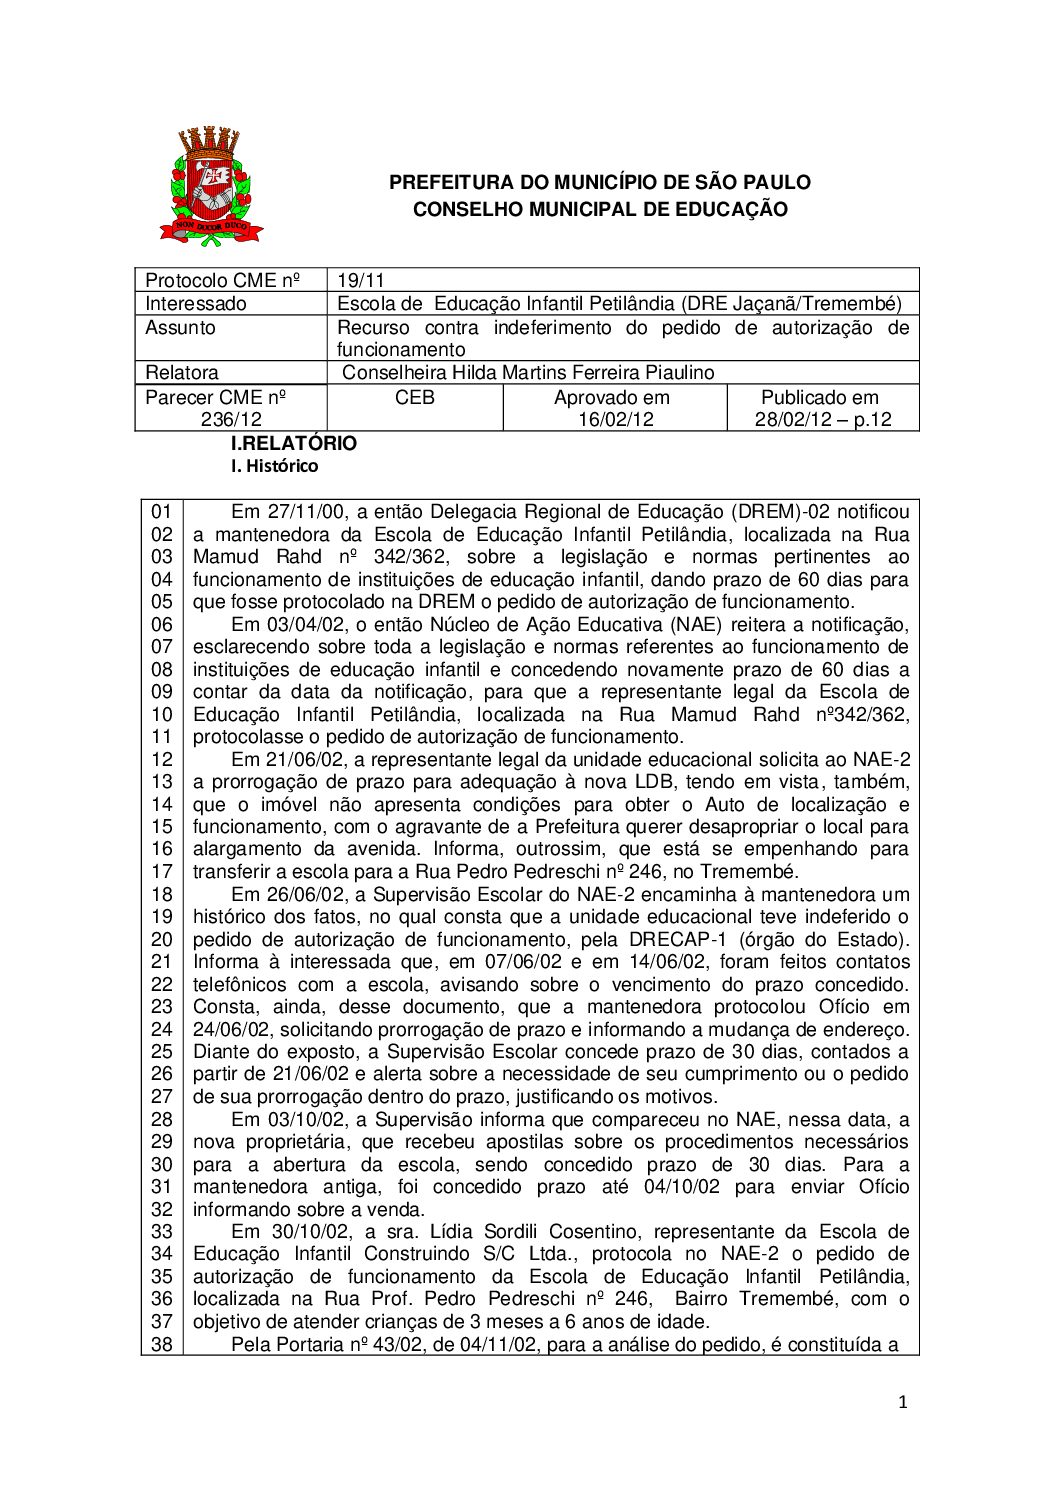 Parecer CME nº 236/2012 - Escola de  Educação Infantil Petilândia (DRE Jaçanã/Tremembé) - Recurso contra indeferimento do pedido de autorização de  funcionamento 